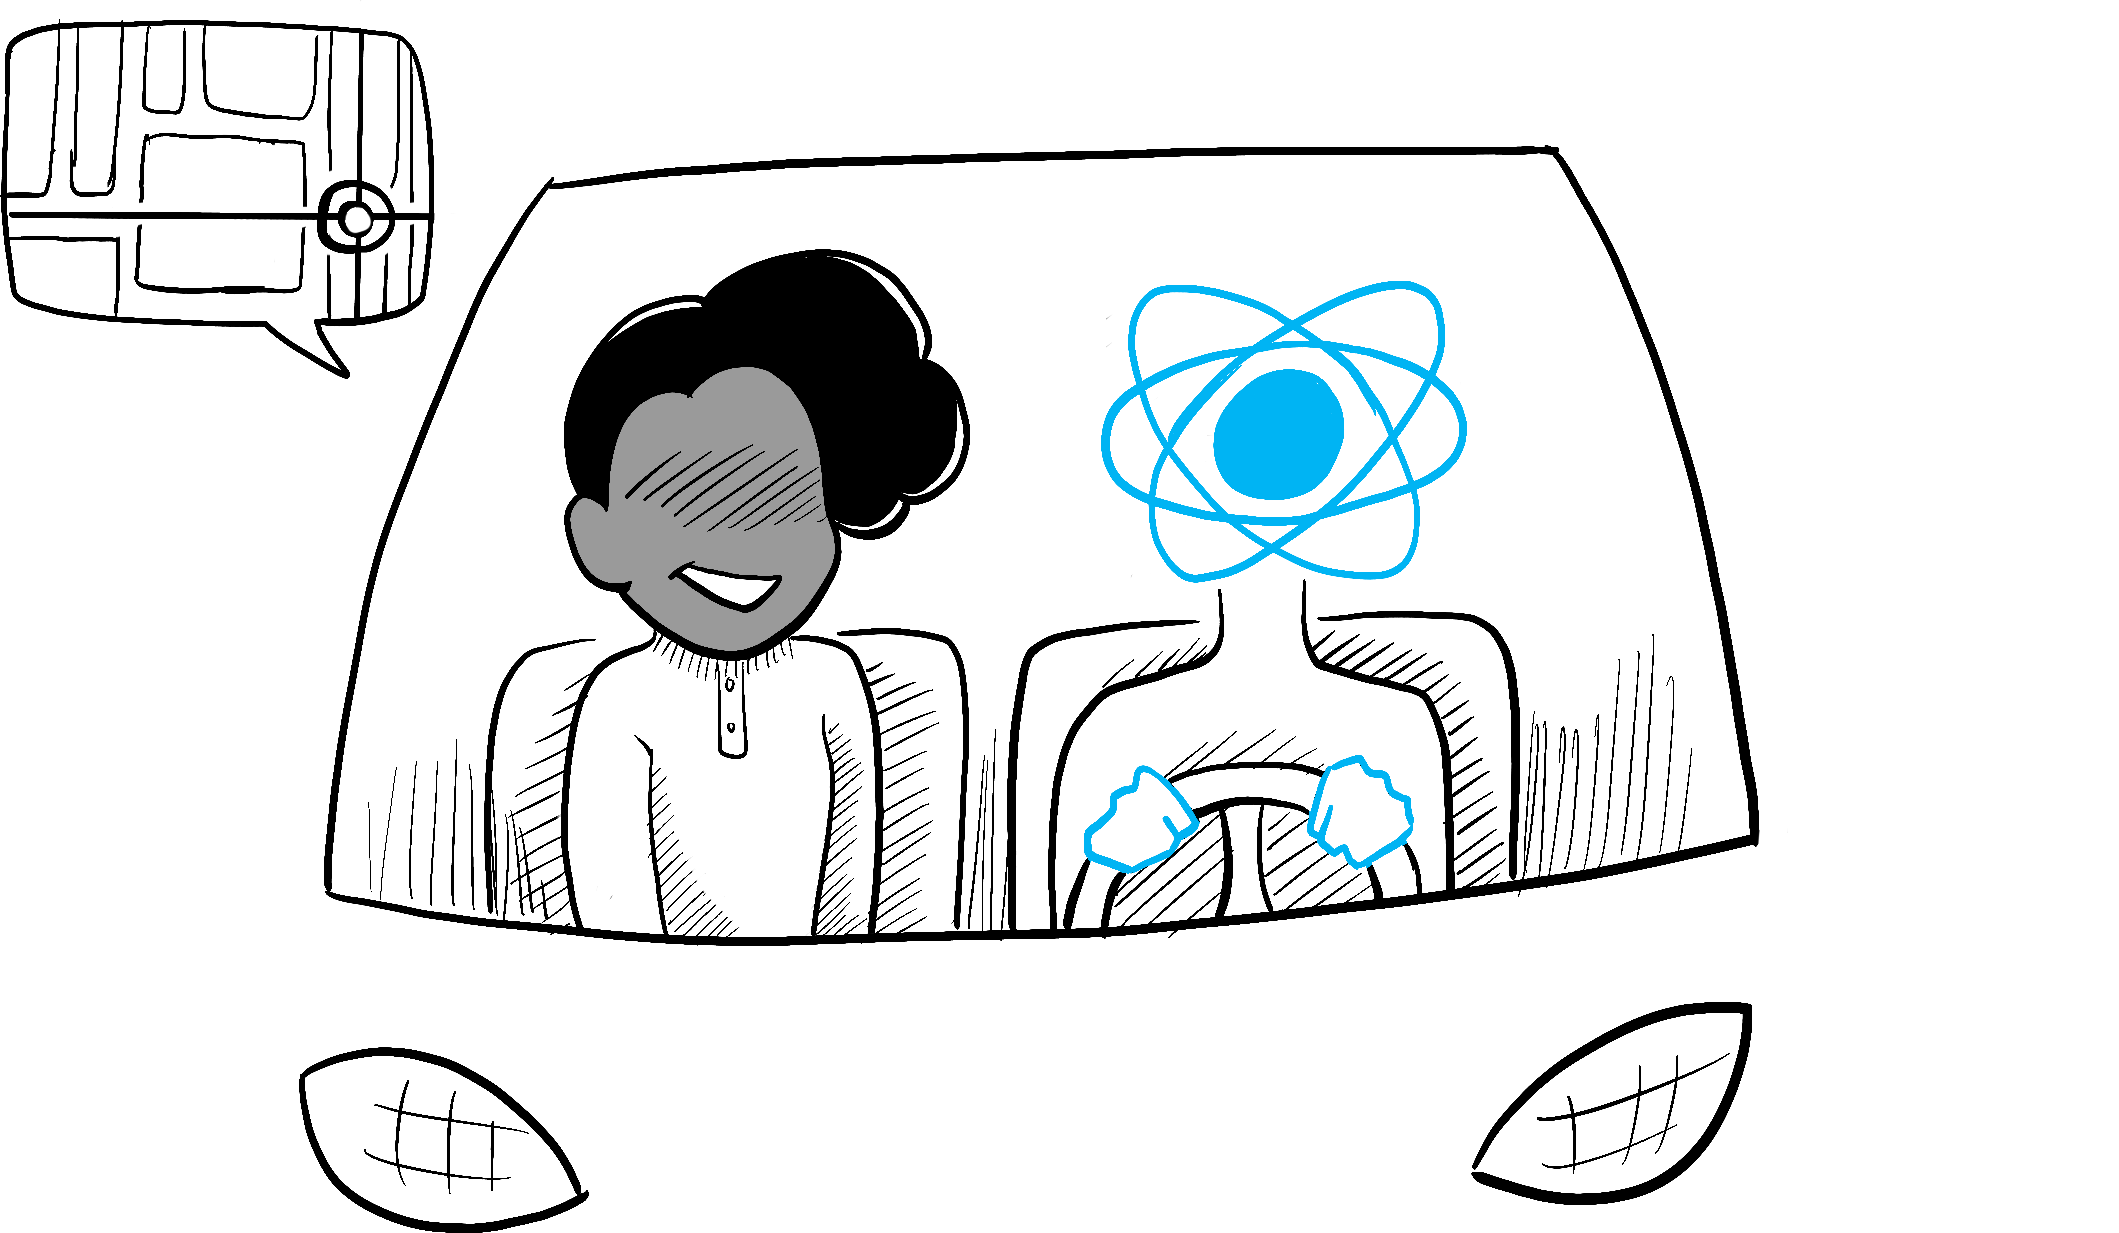 En un coche conducido por React, un pasajero indica el lugar al que desea ir en el mapa. React sabe como hacerlo.